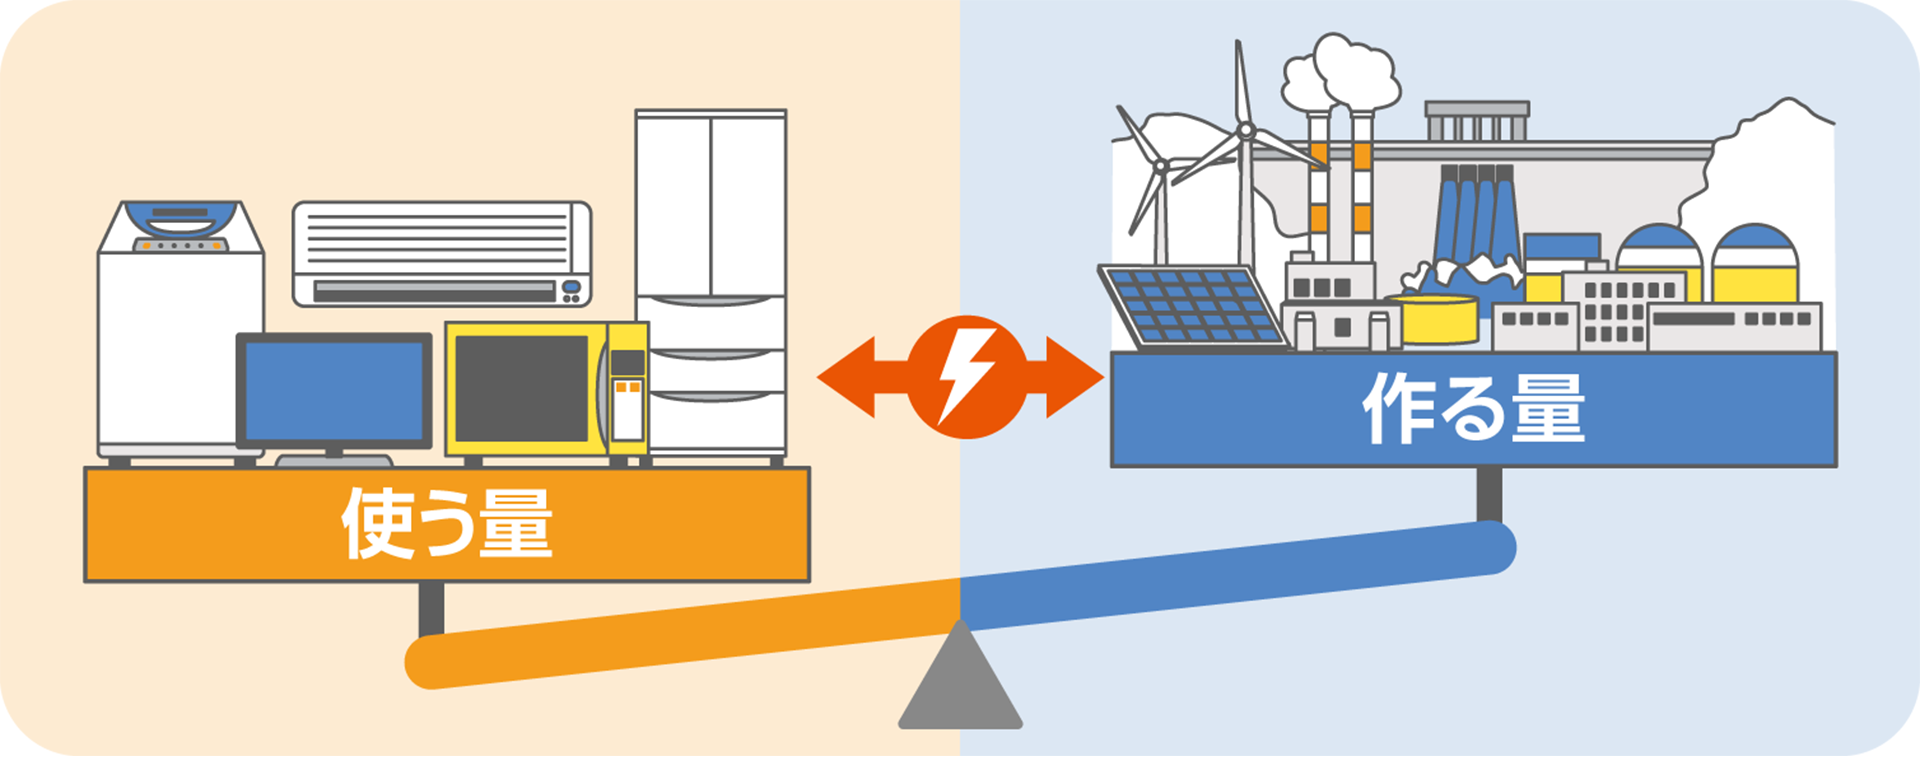 電気を安定して供給するためには、電気を使う量(需要)と電気を作る量(供給)が同じ時に同じ量になっている必要がある。